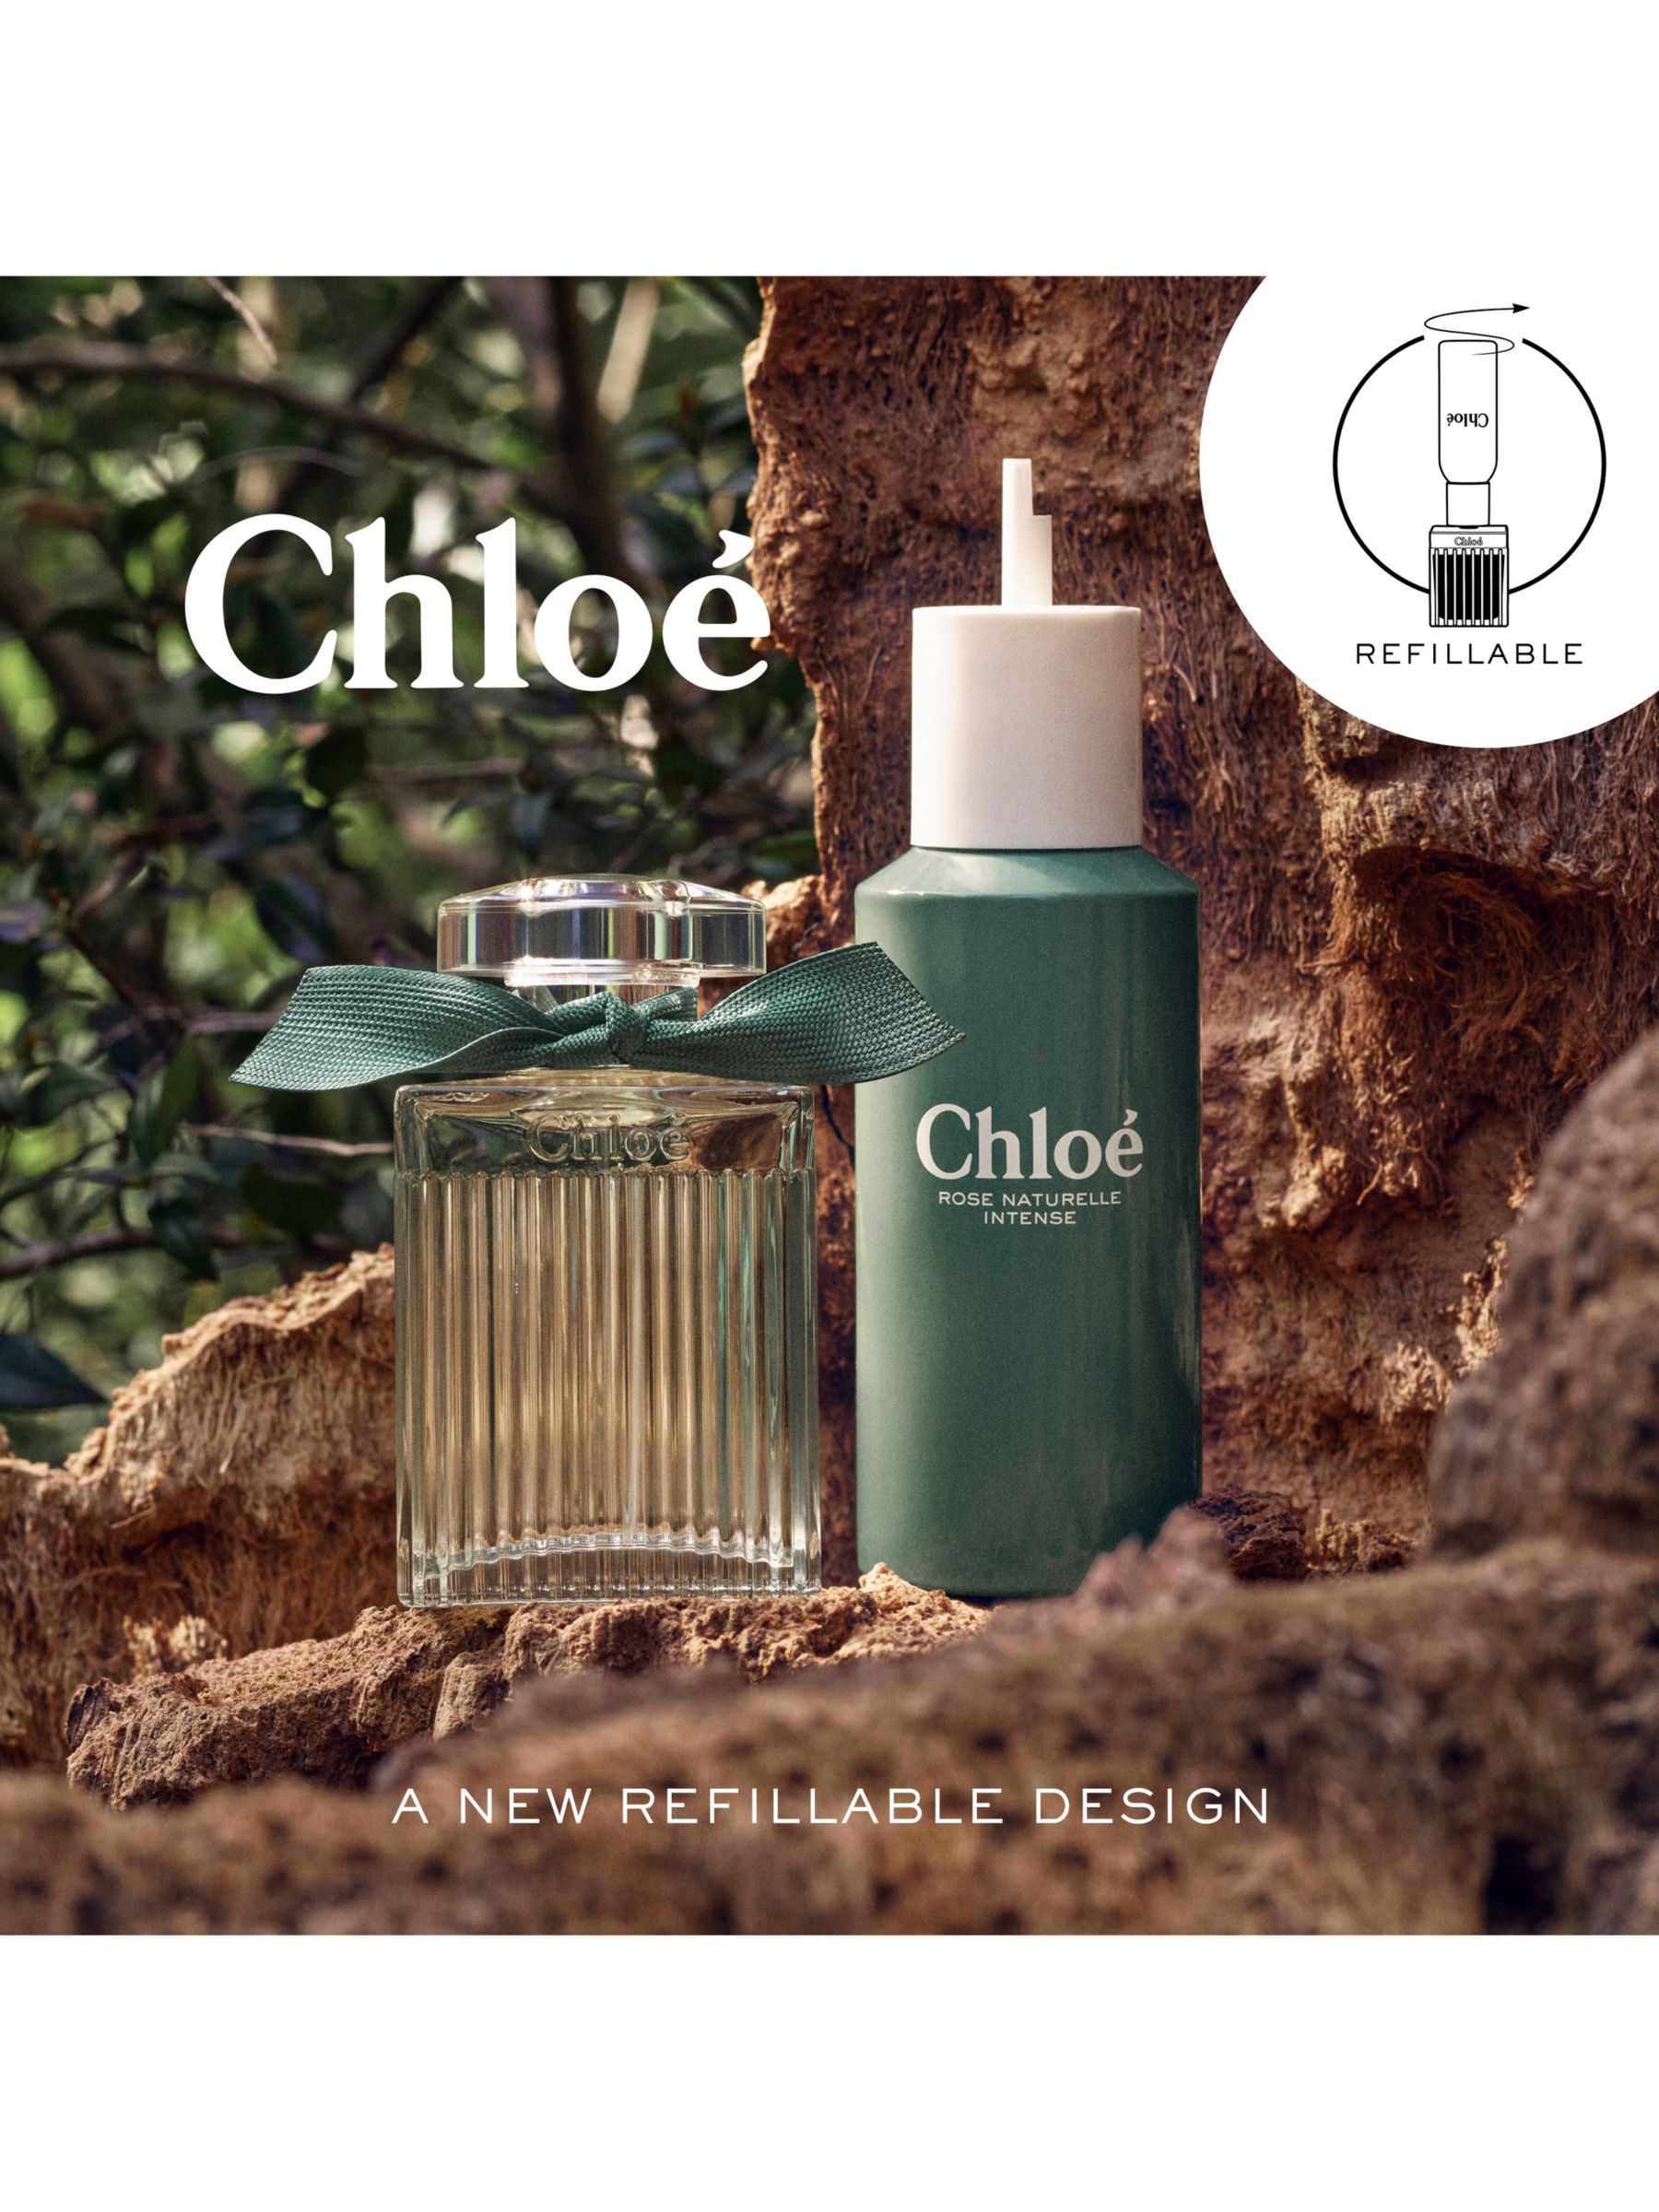 Chloé Rose Naturelle Intense Eau de Parfum, 30ml at John Lewis & Partners